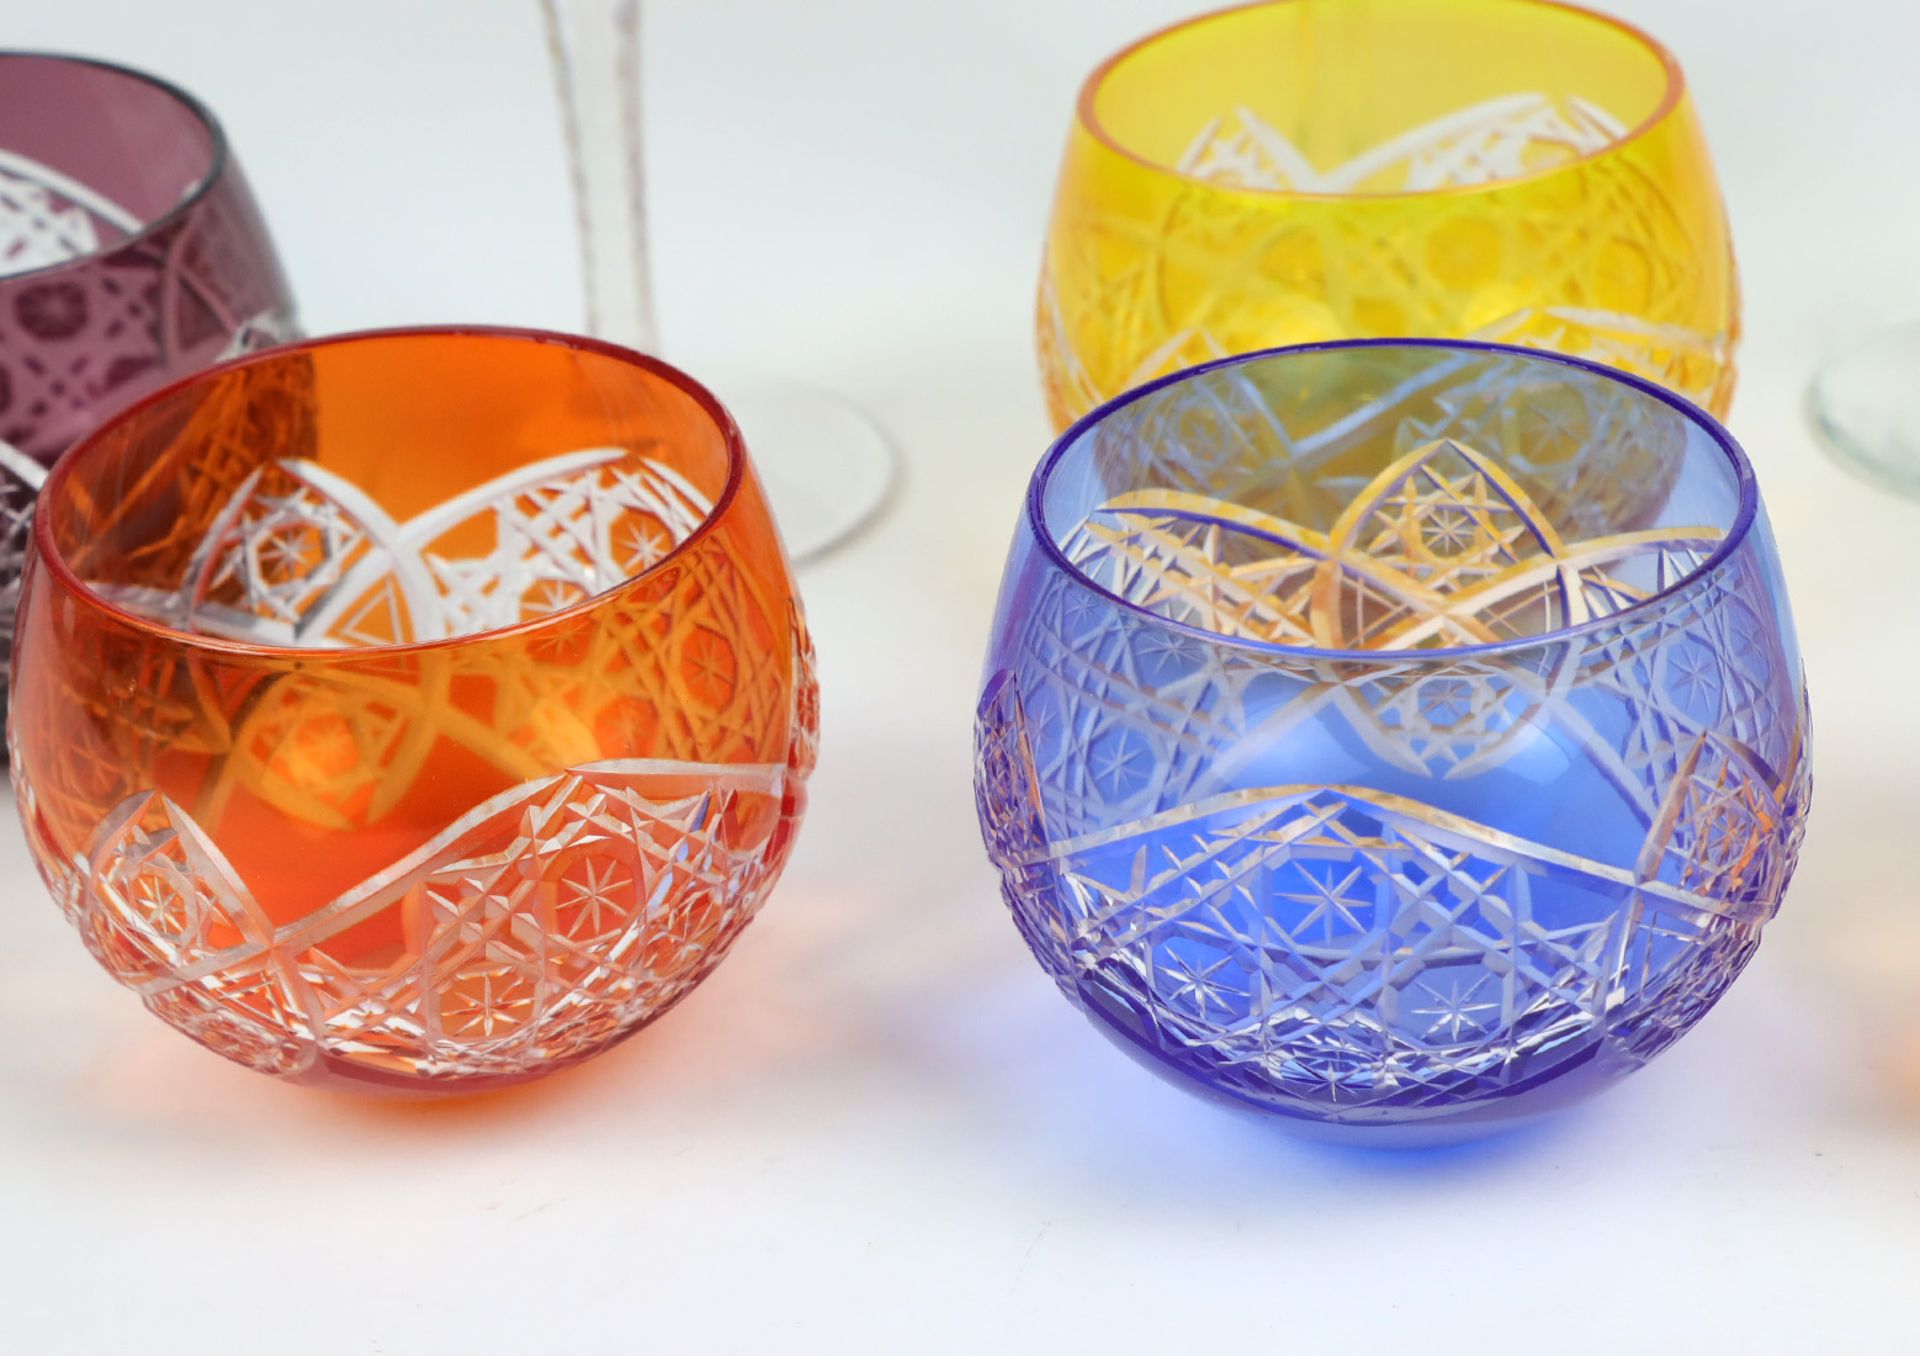 9 Kristallgläserfarbloses Kristallglas mundgeblasen, Kuppa verschieden farbig überfa - Bild 2 aus 4